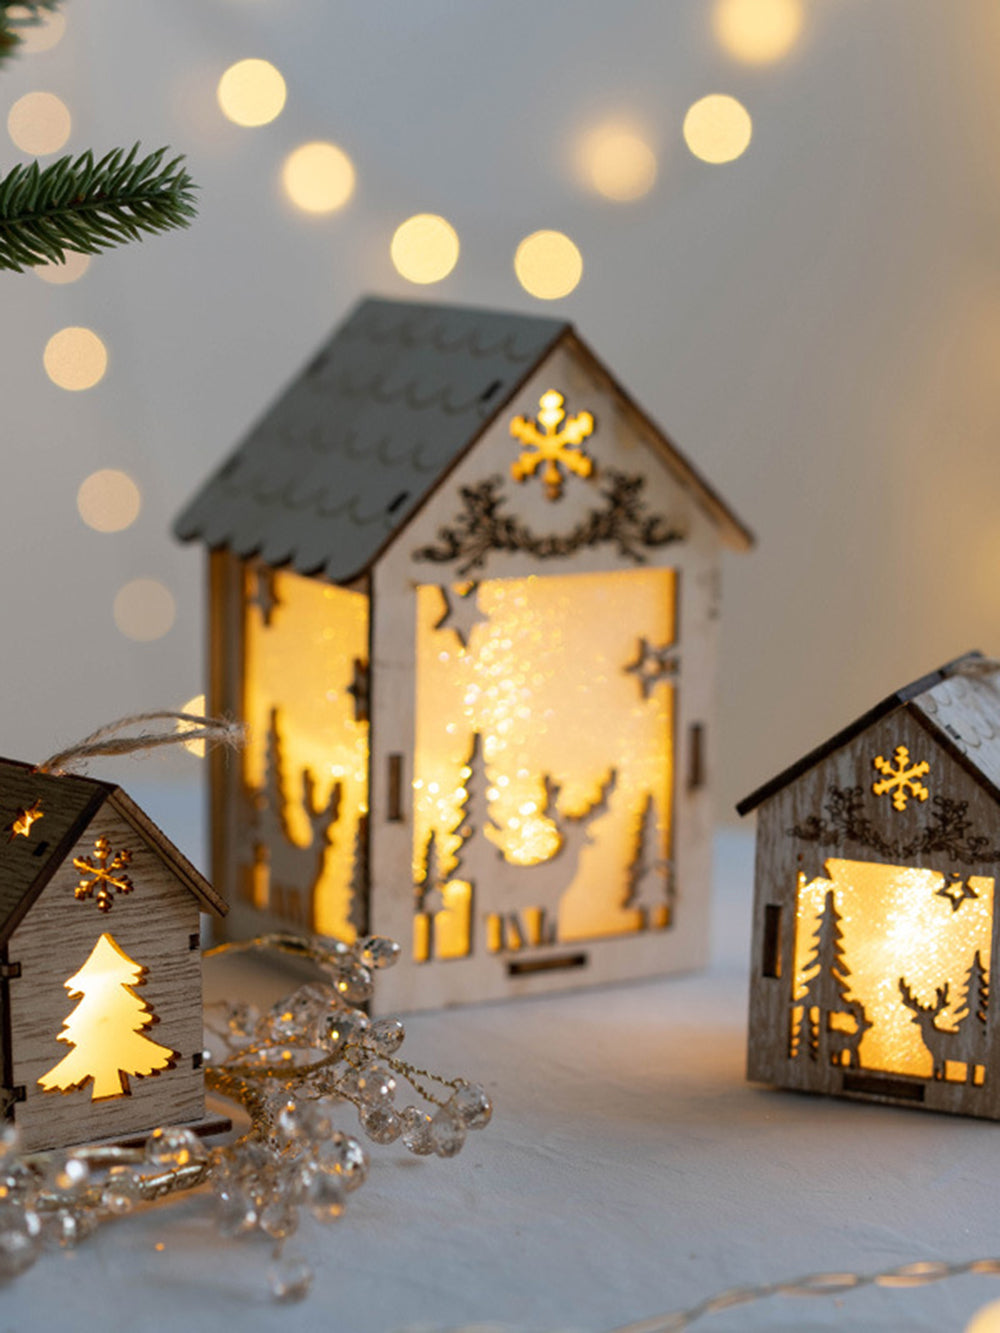 Decorazioni per la casa in legno per albero di Natale